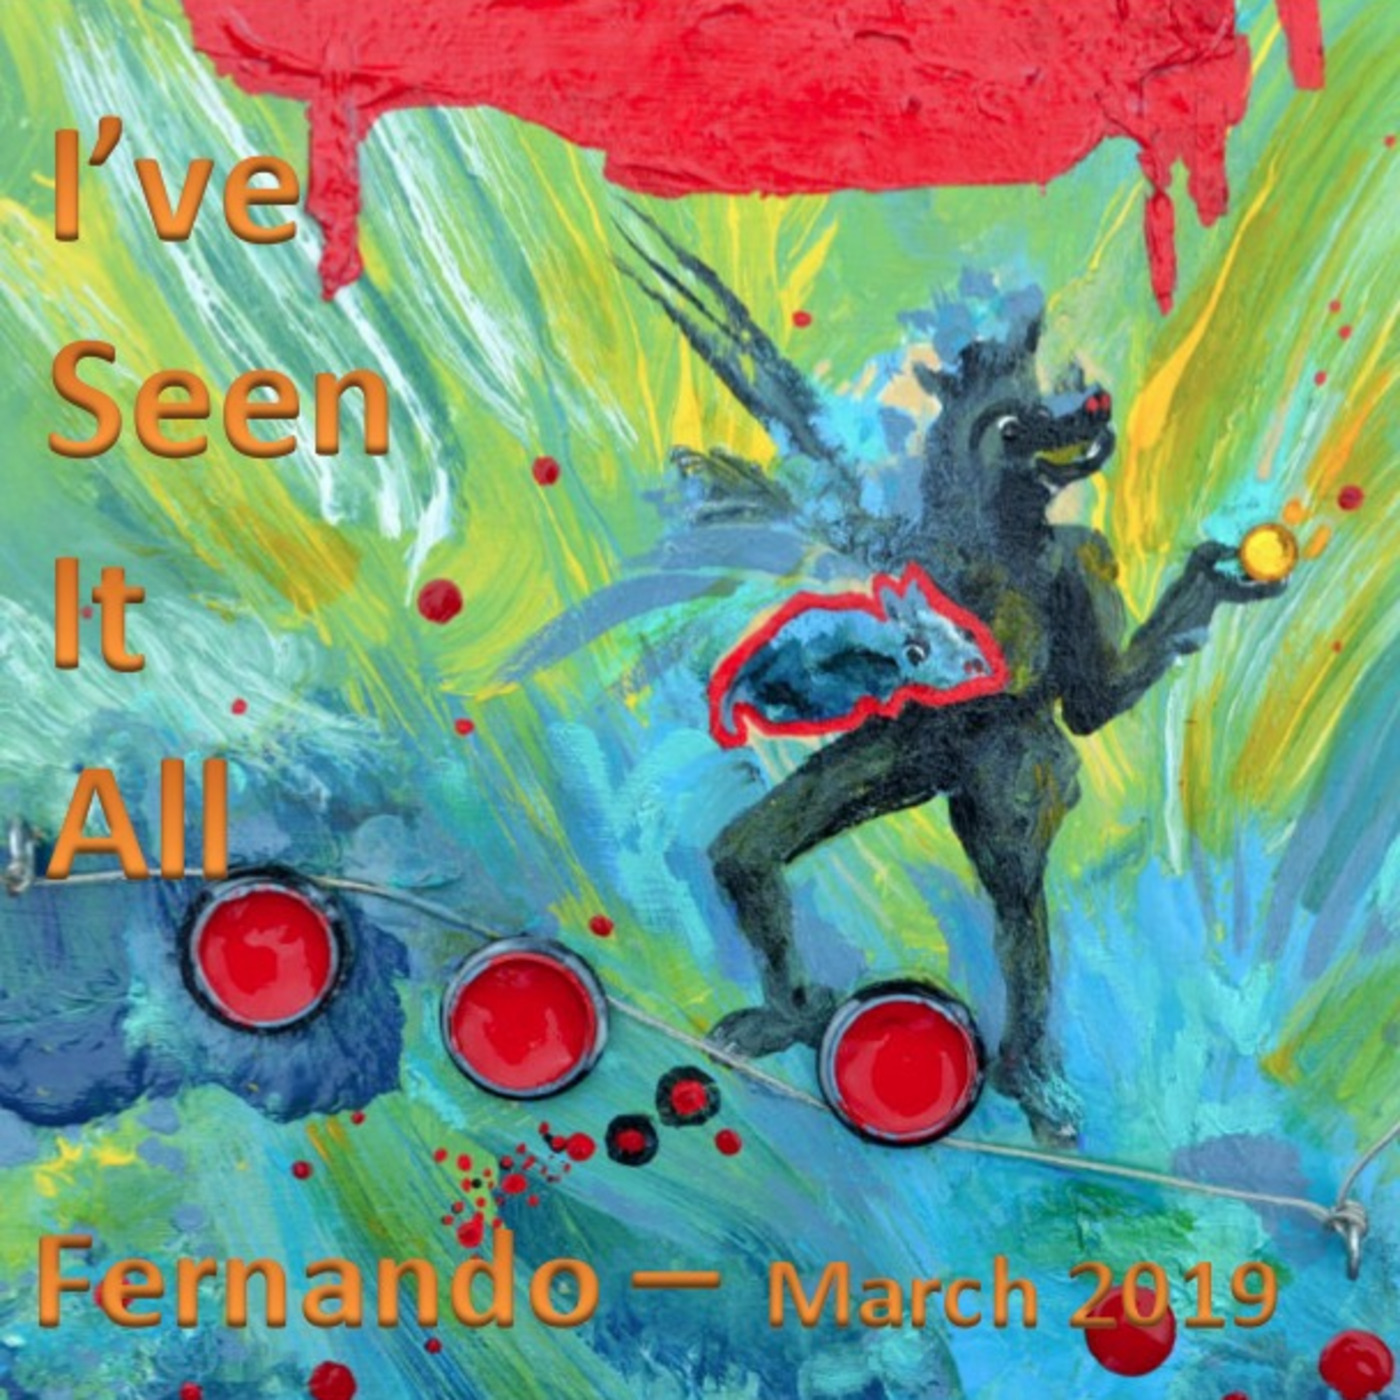 Fernando - I’ve Seen It All - March 2019